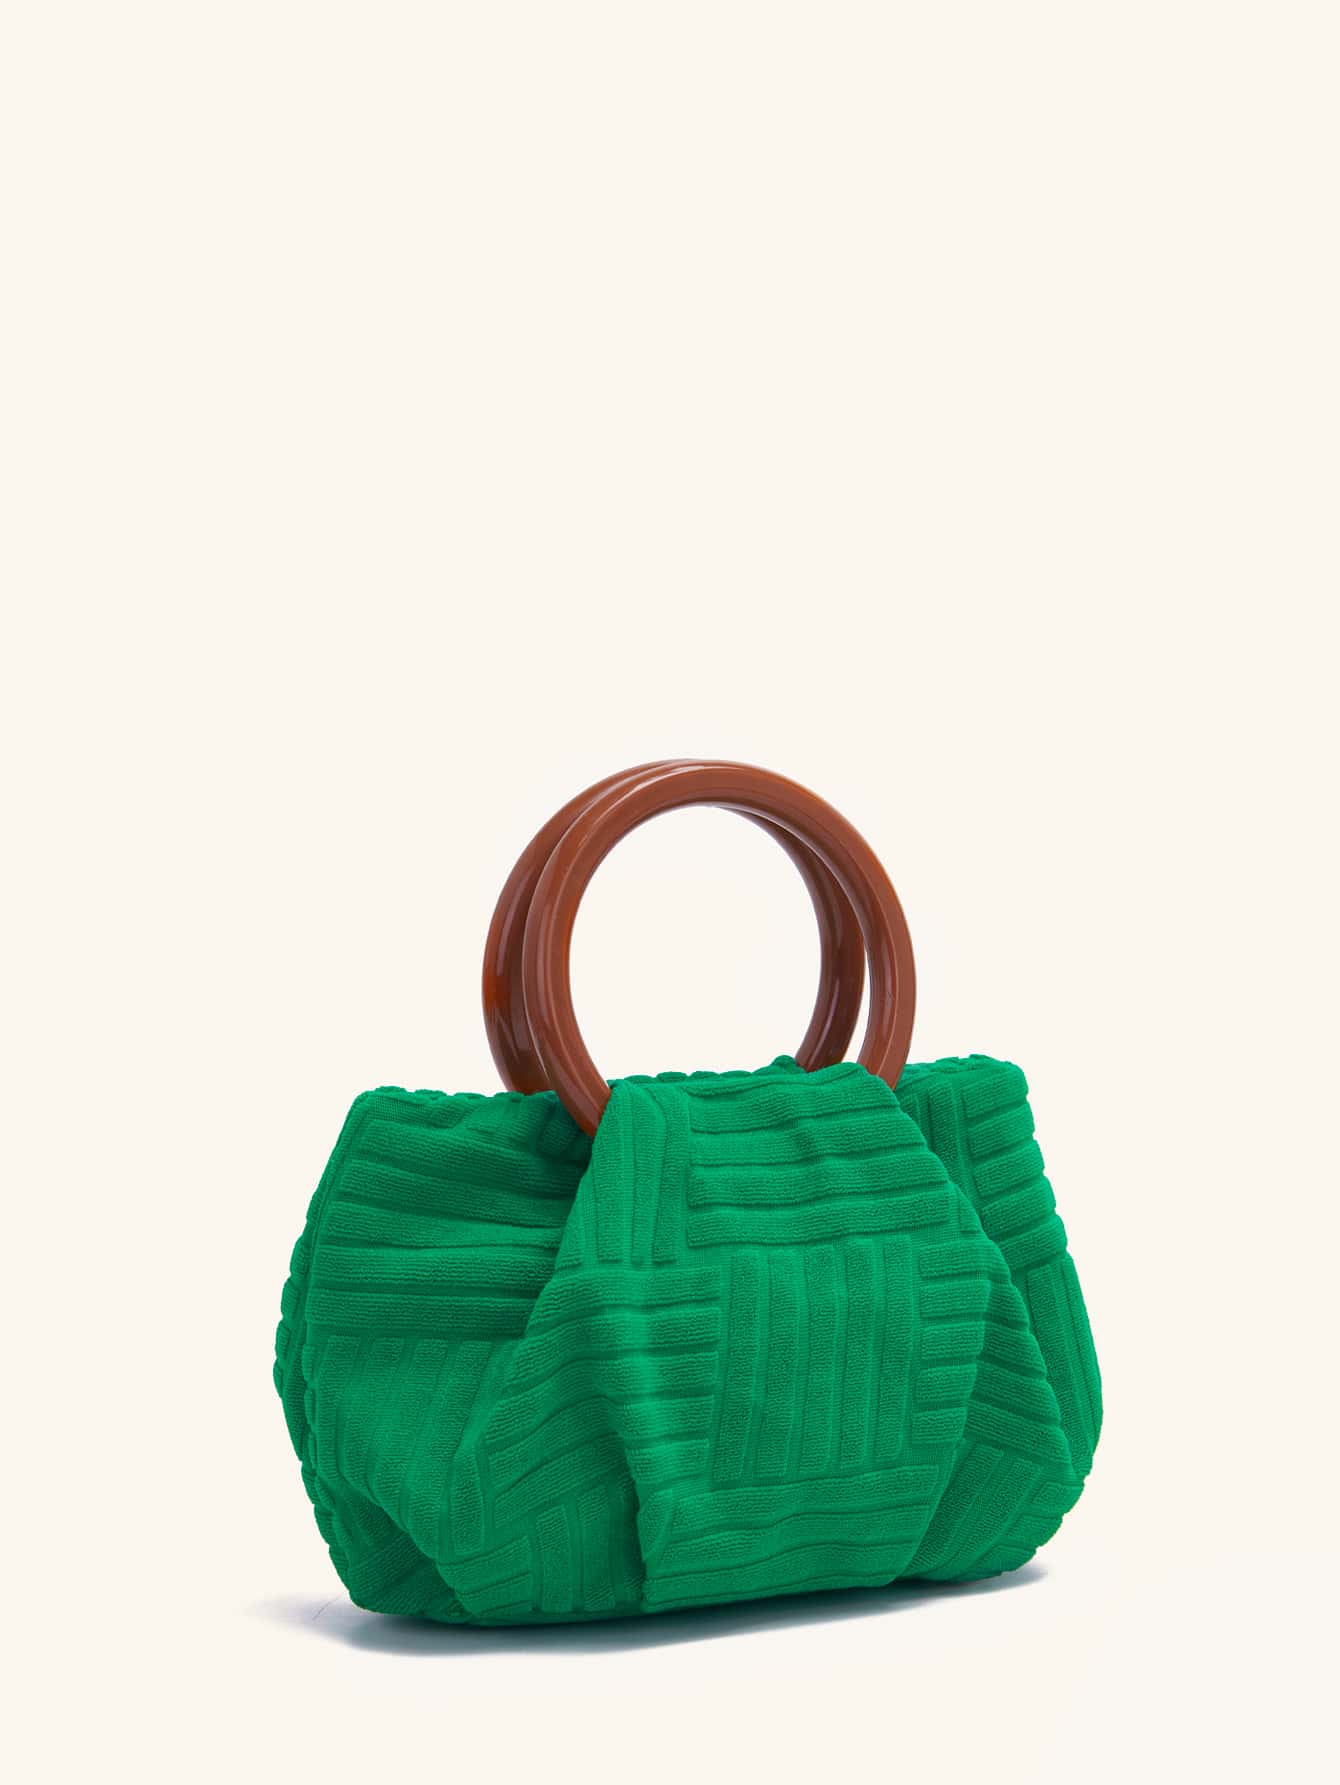 Мини-клатч с геометрическим дизайном и двойными ручками, зеленый